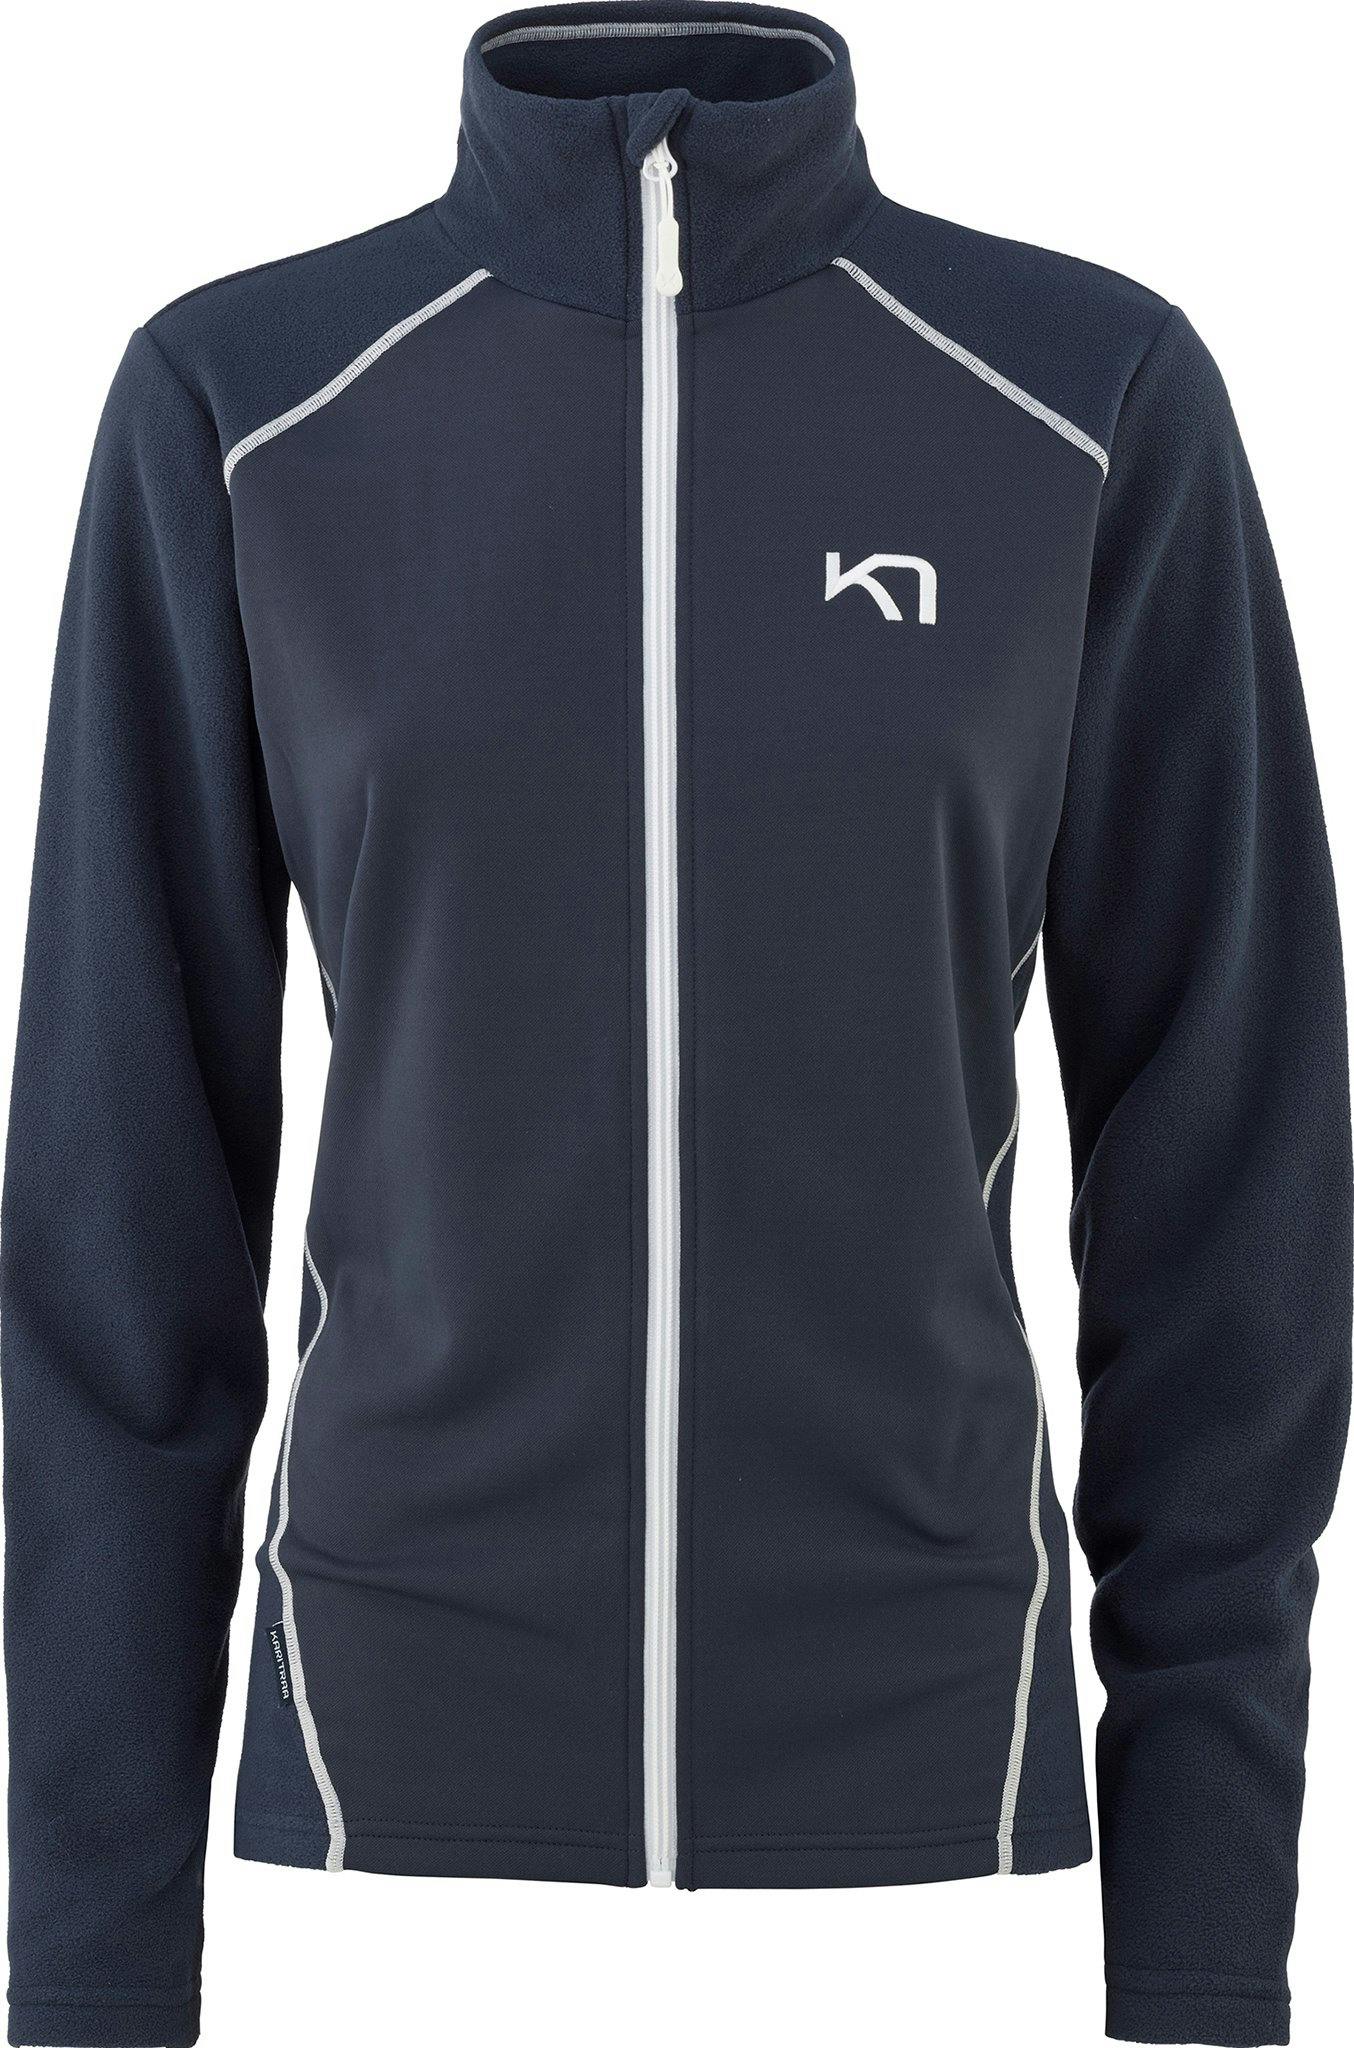 Product image for Kari Full-Zip Fleece Midlayer Top - Women's